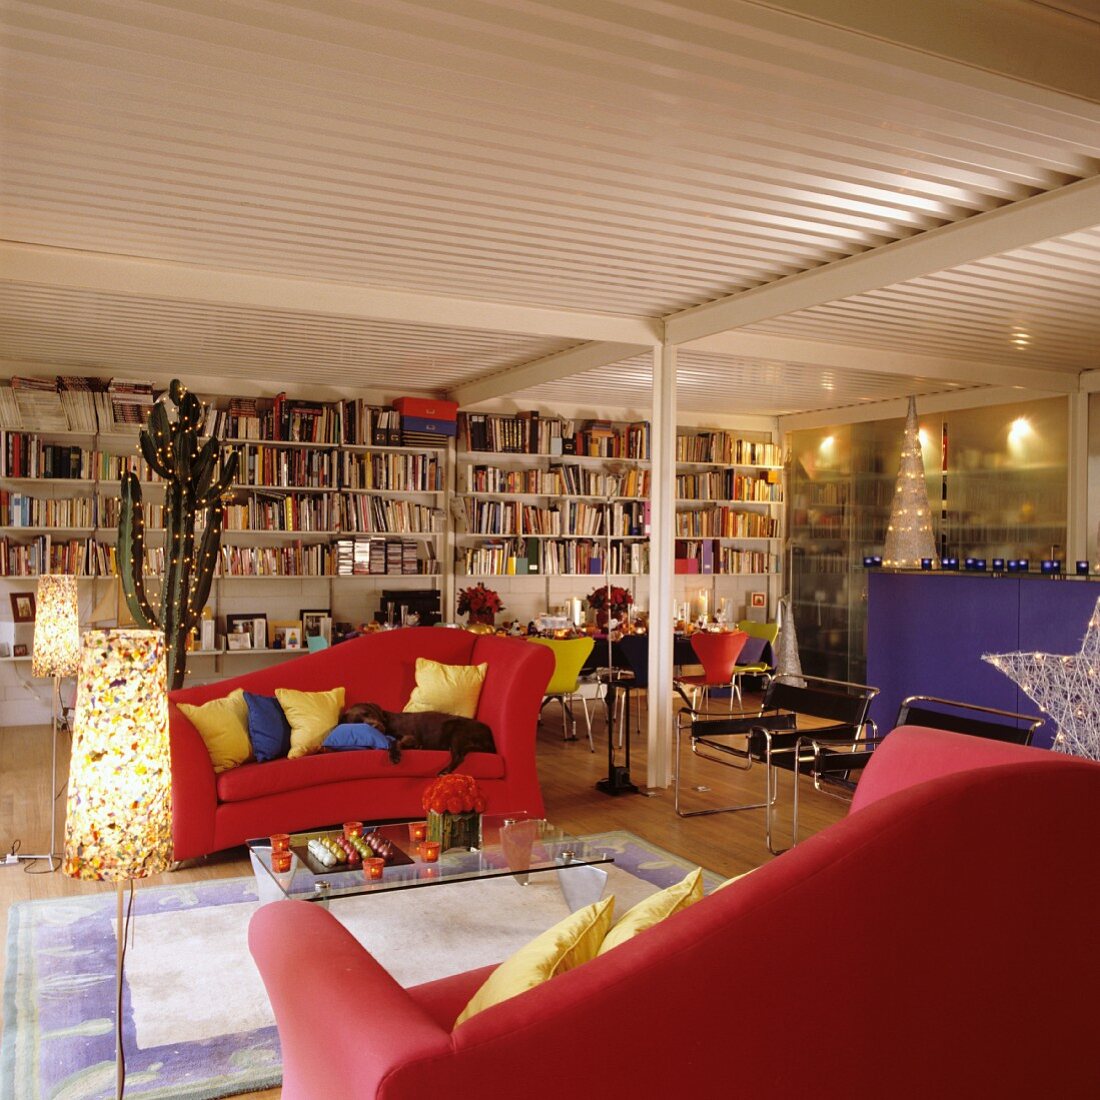 Rote Sofas und eine volle Bücherwand in weihnachtlich dekorierter Loftwohnung mit Trapezblechdecke